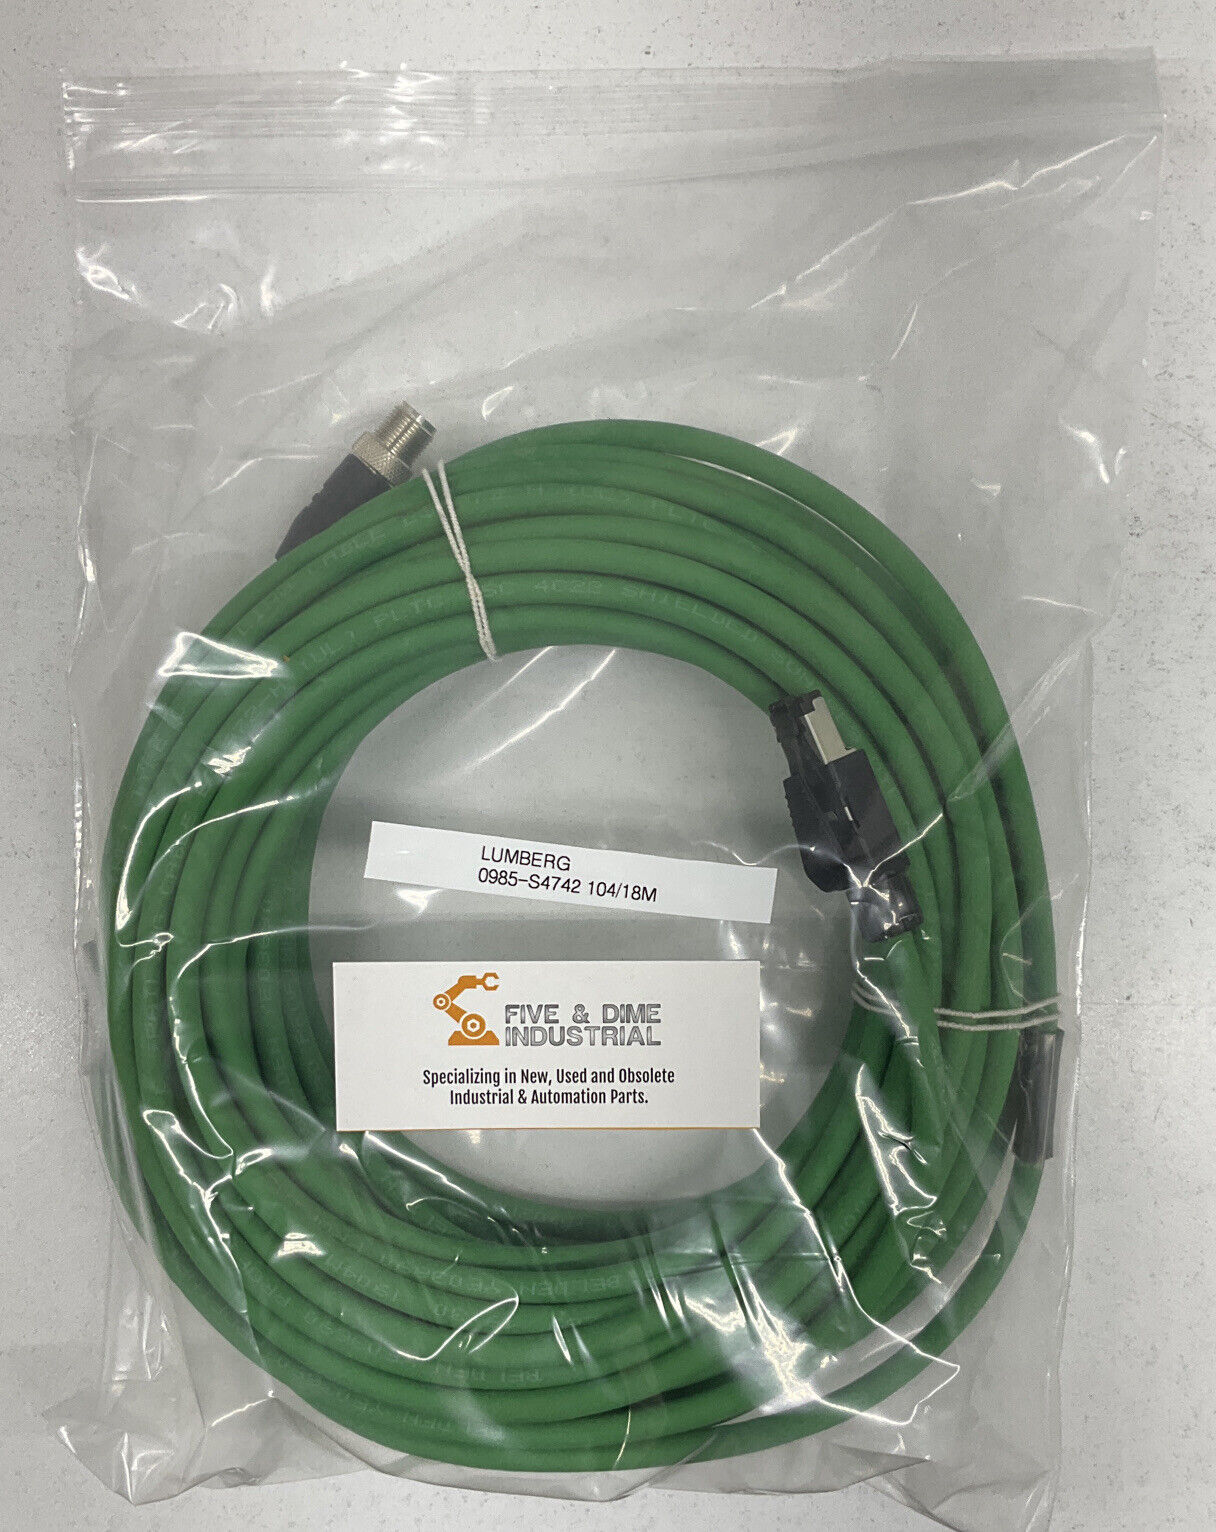 Lumberg 0985-S4742 104/18M New Profinet Cable 4-Pin M12/RJ45 (CBL124)